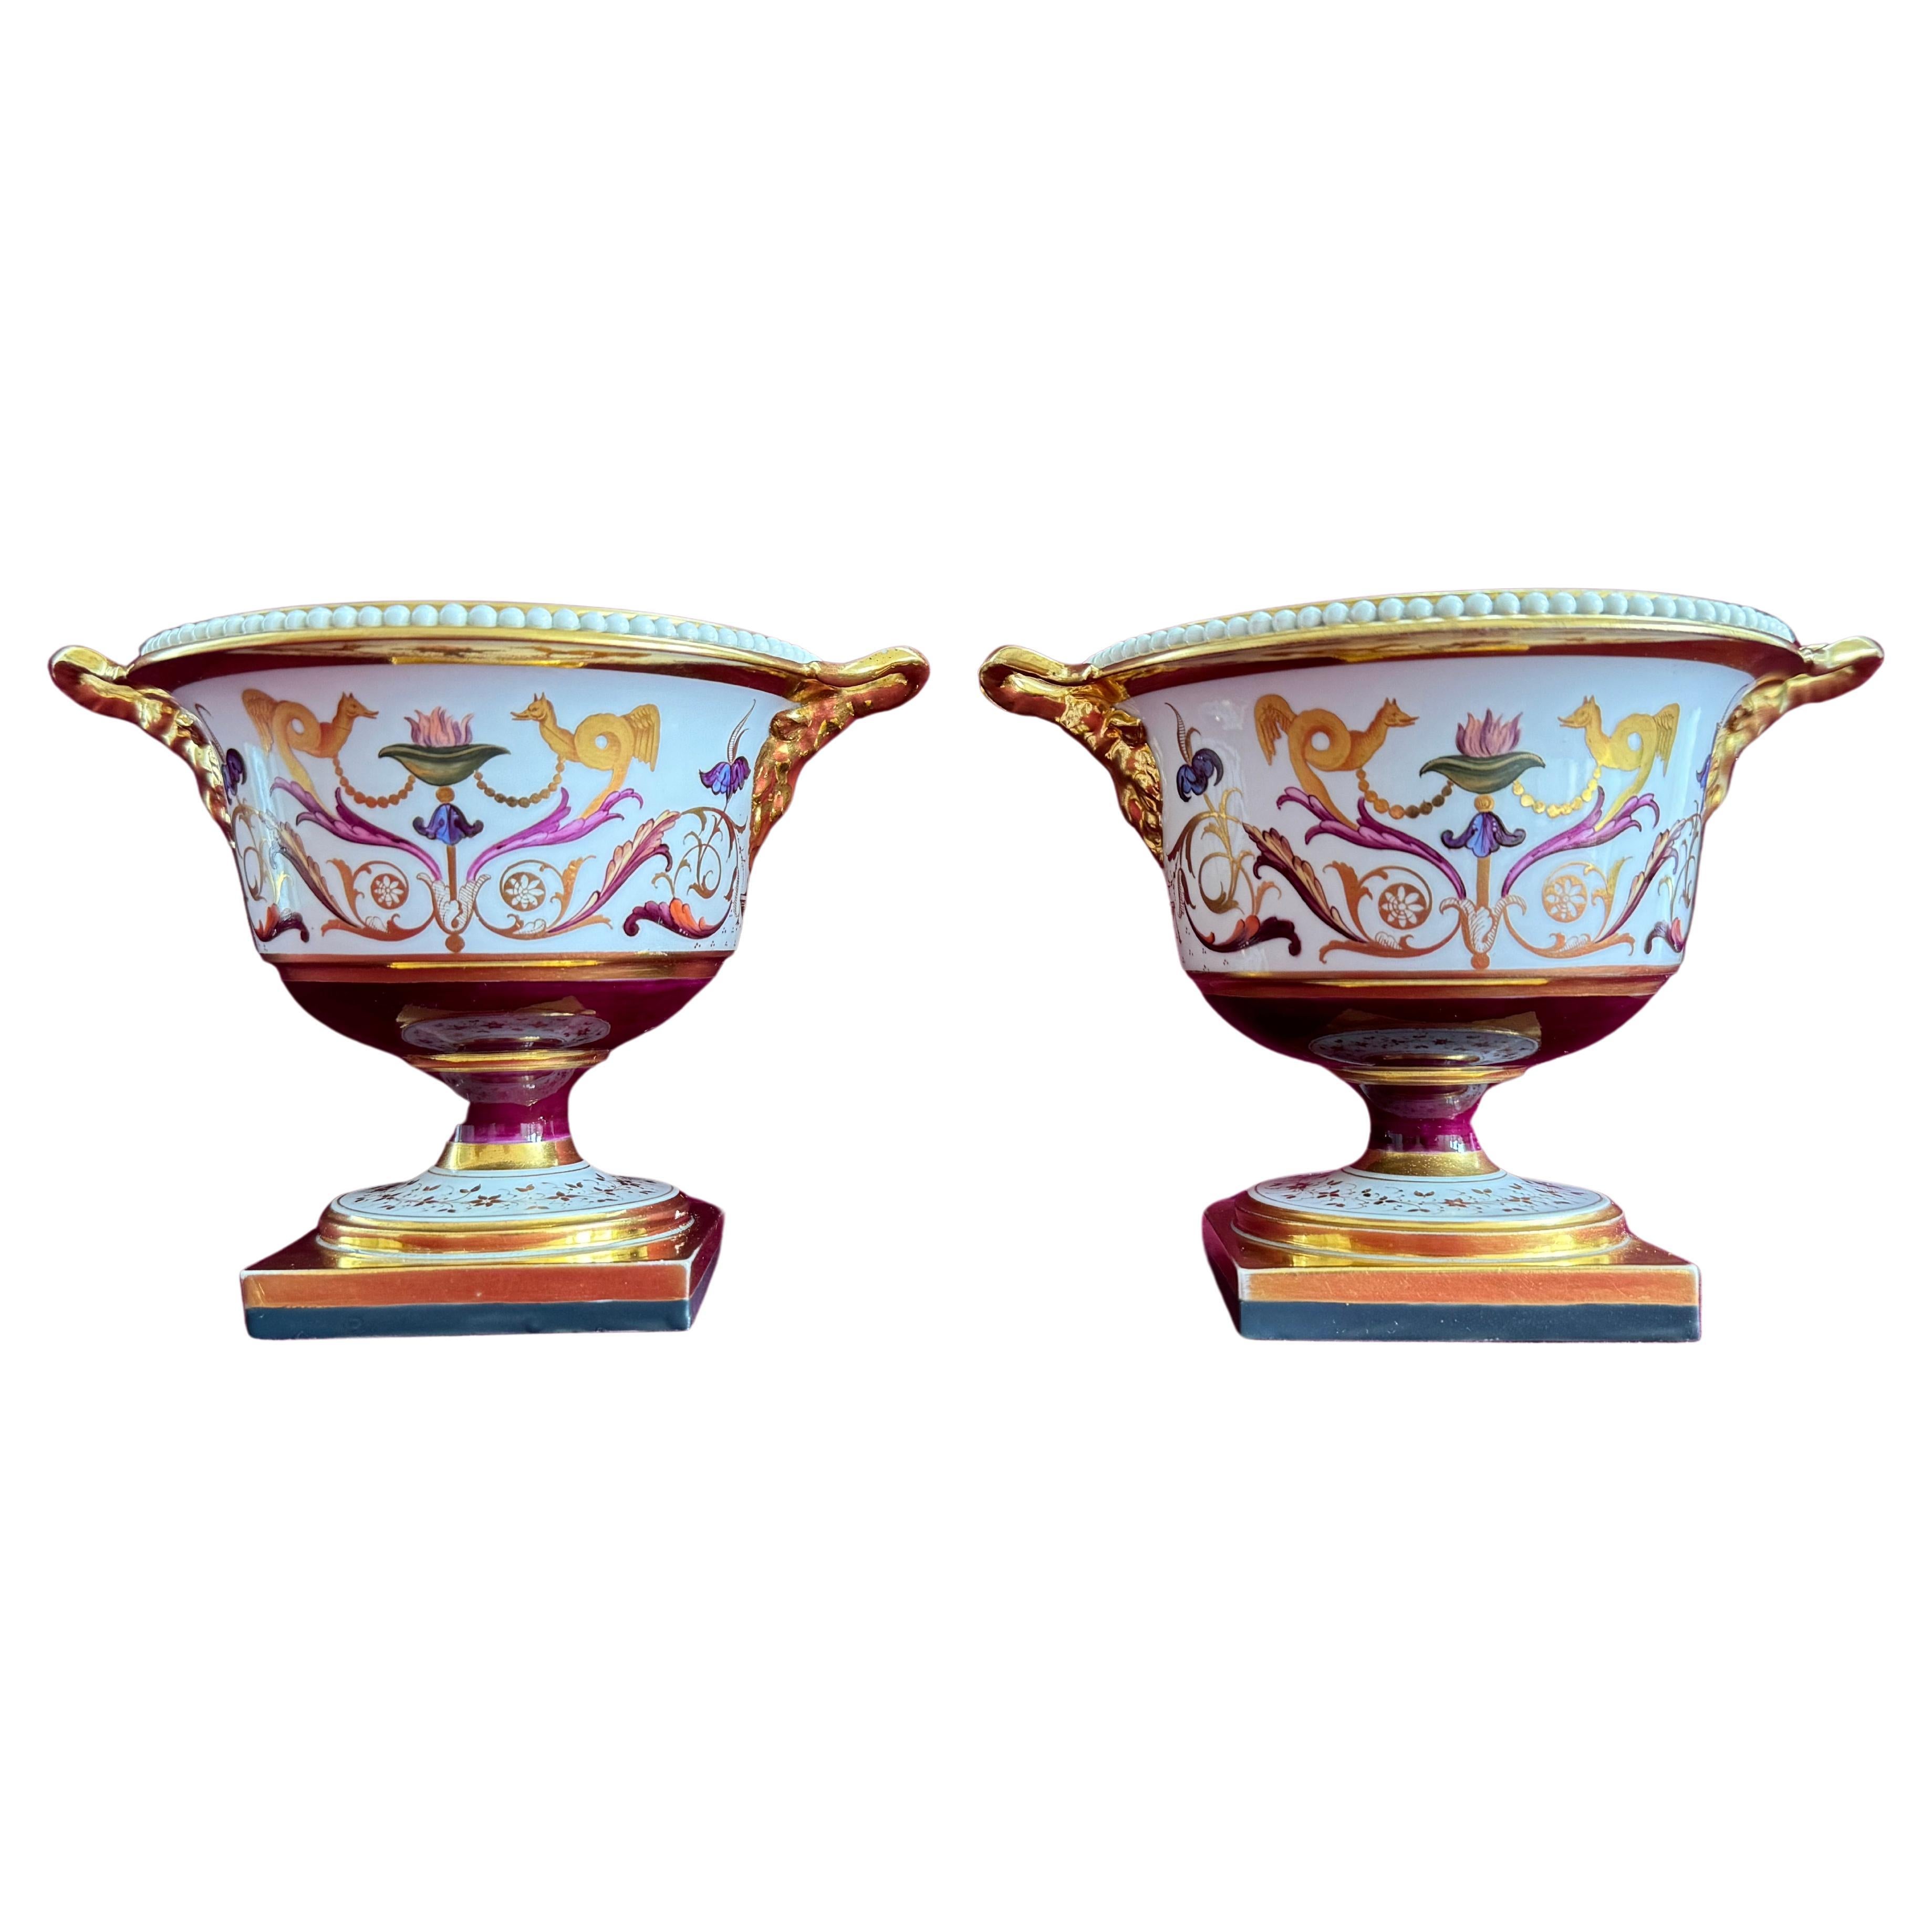 A pair of Barr, Flight & Barr Worcester Porcelain Pastille Burners